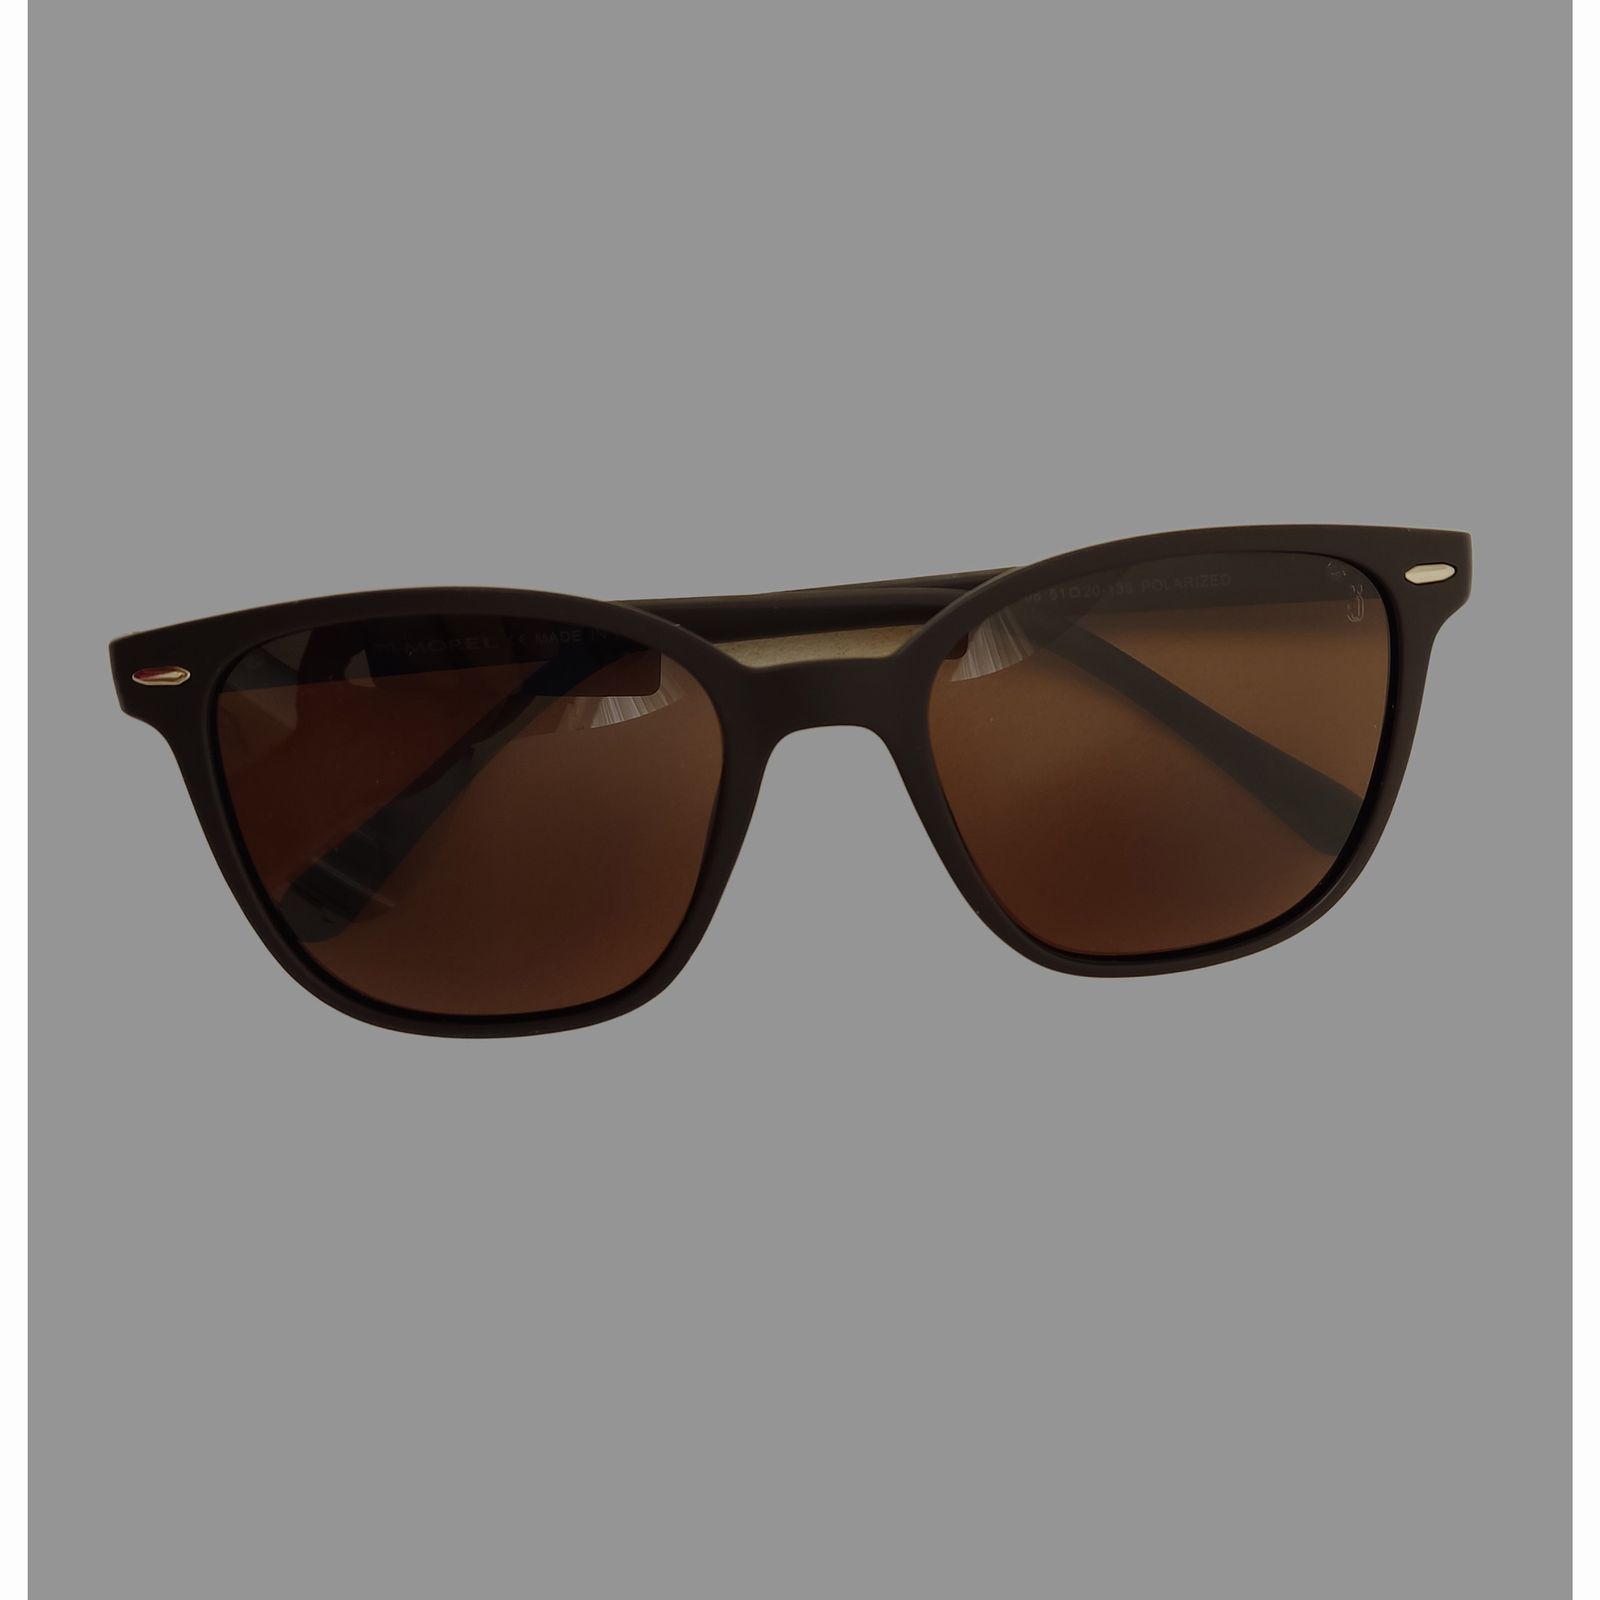 عینک آفتابی مورل مدل 20106 c6 -  - 10